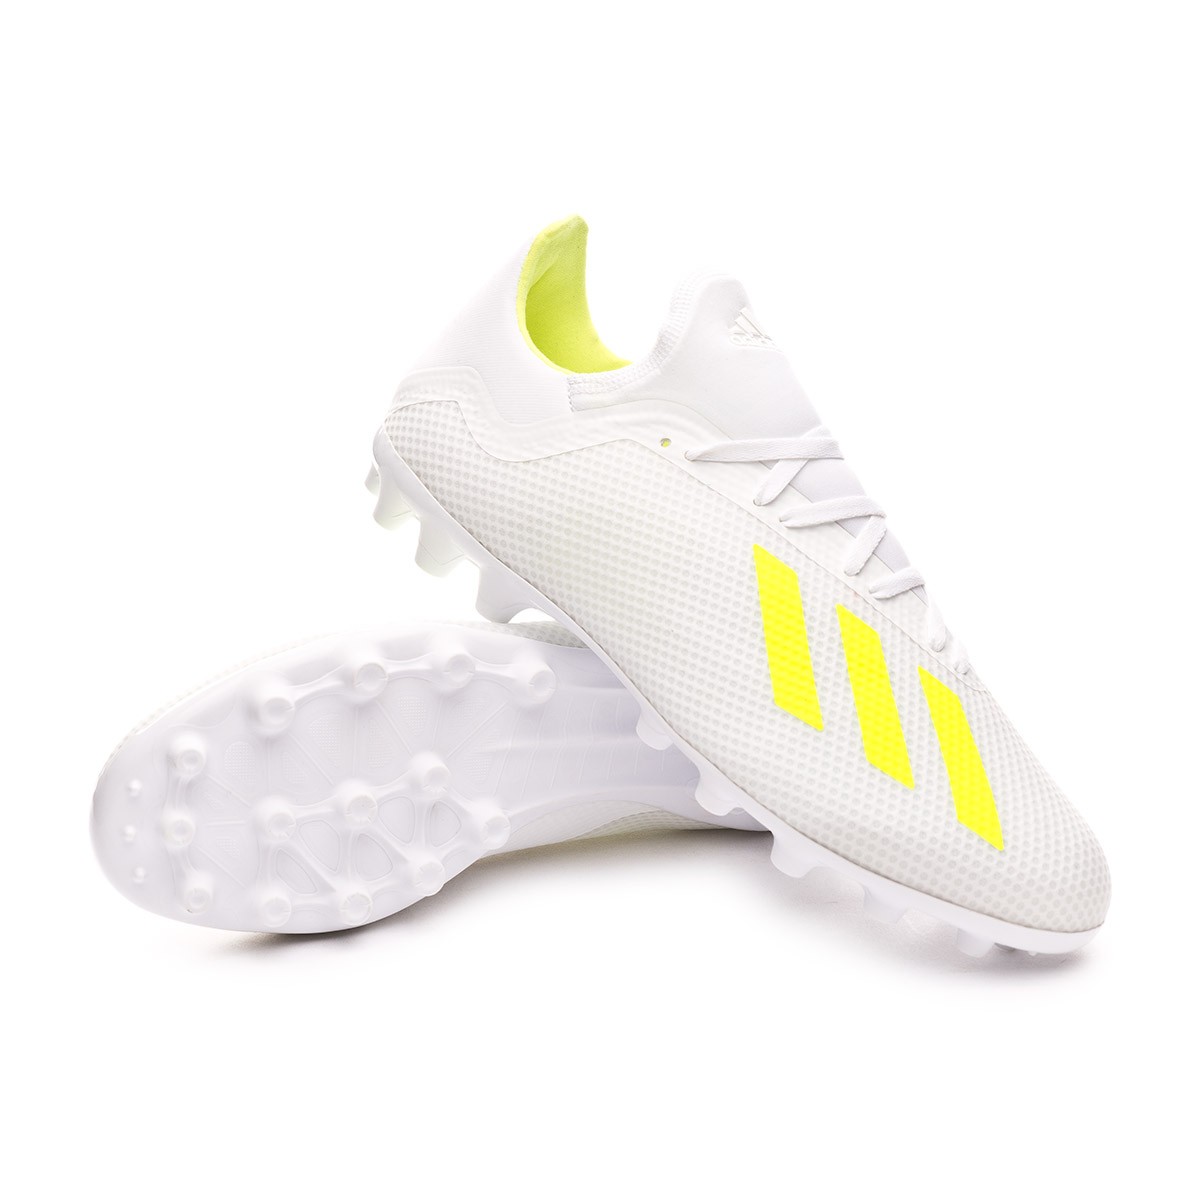 Bota de fútbol adidas X 18.3 AG White-Solar yellow-White - Tienda de fútbol  Fútbol Emotion